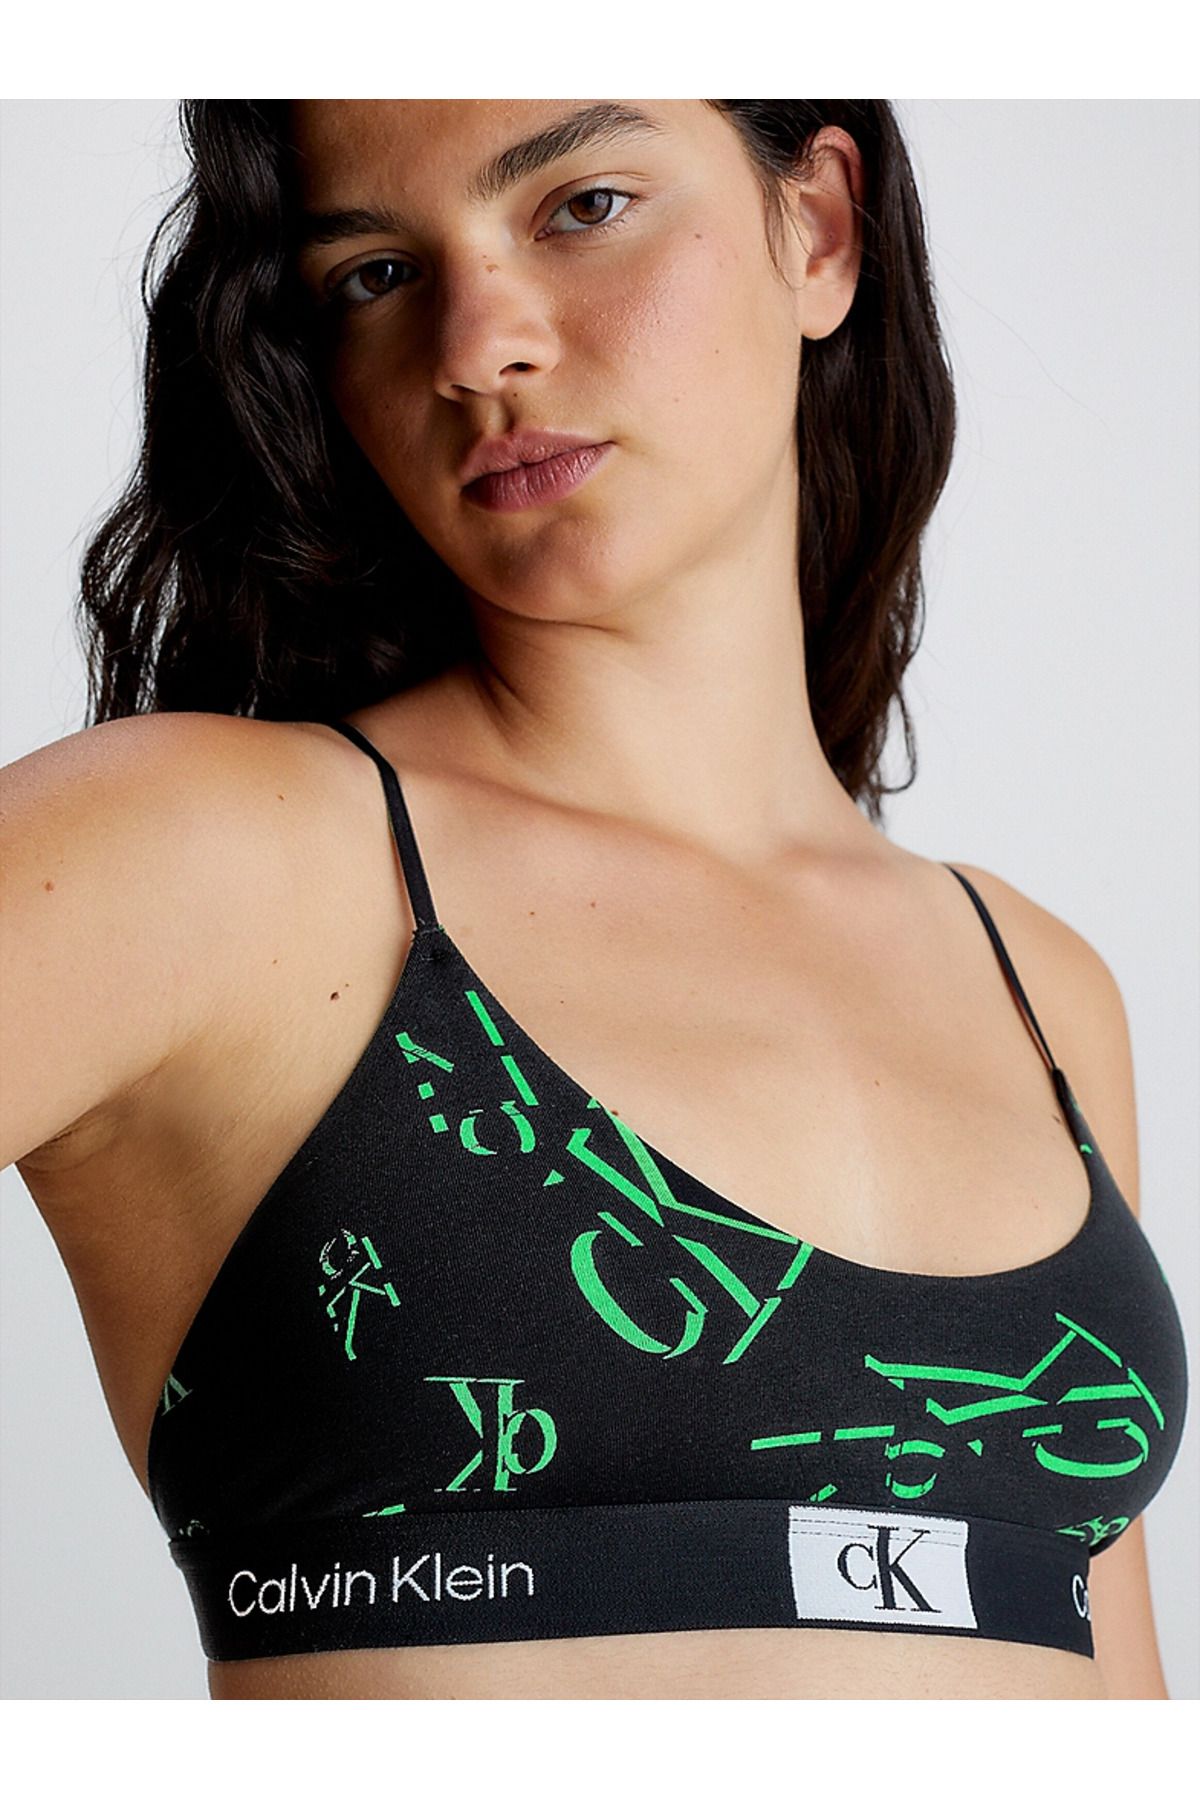 Calvin Klein Kadın Marka Logolu Askılı Spor Giyim Günlük Siyah-Yeşil Spor Sütyen 000QF7216E-GNG